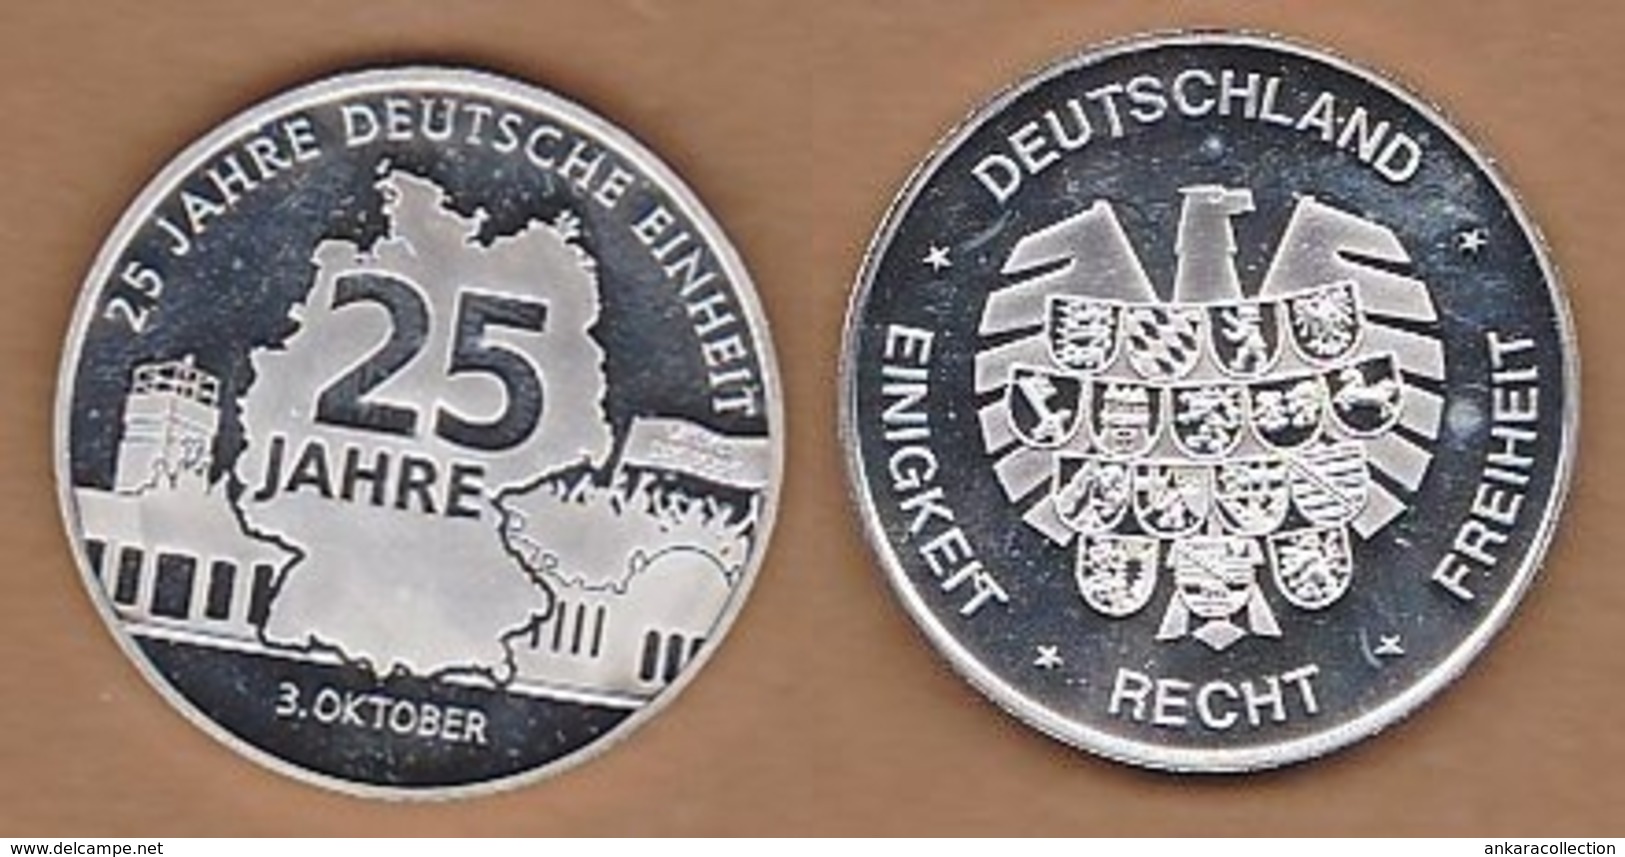 AC - 25 JAHRE DEUTSCHE EINHEITT 3 OKTOBER DEUTSCHLAND EINIGKEIT RECHT FREIHEIT 25 YEARS OF GERMAN UNITY MEDAL - MEDALLIO - Profesionales/De Sociedad